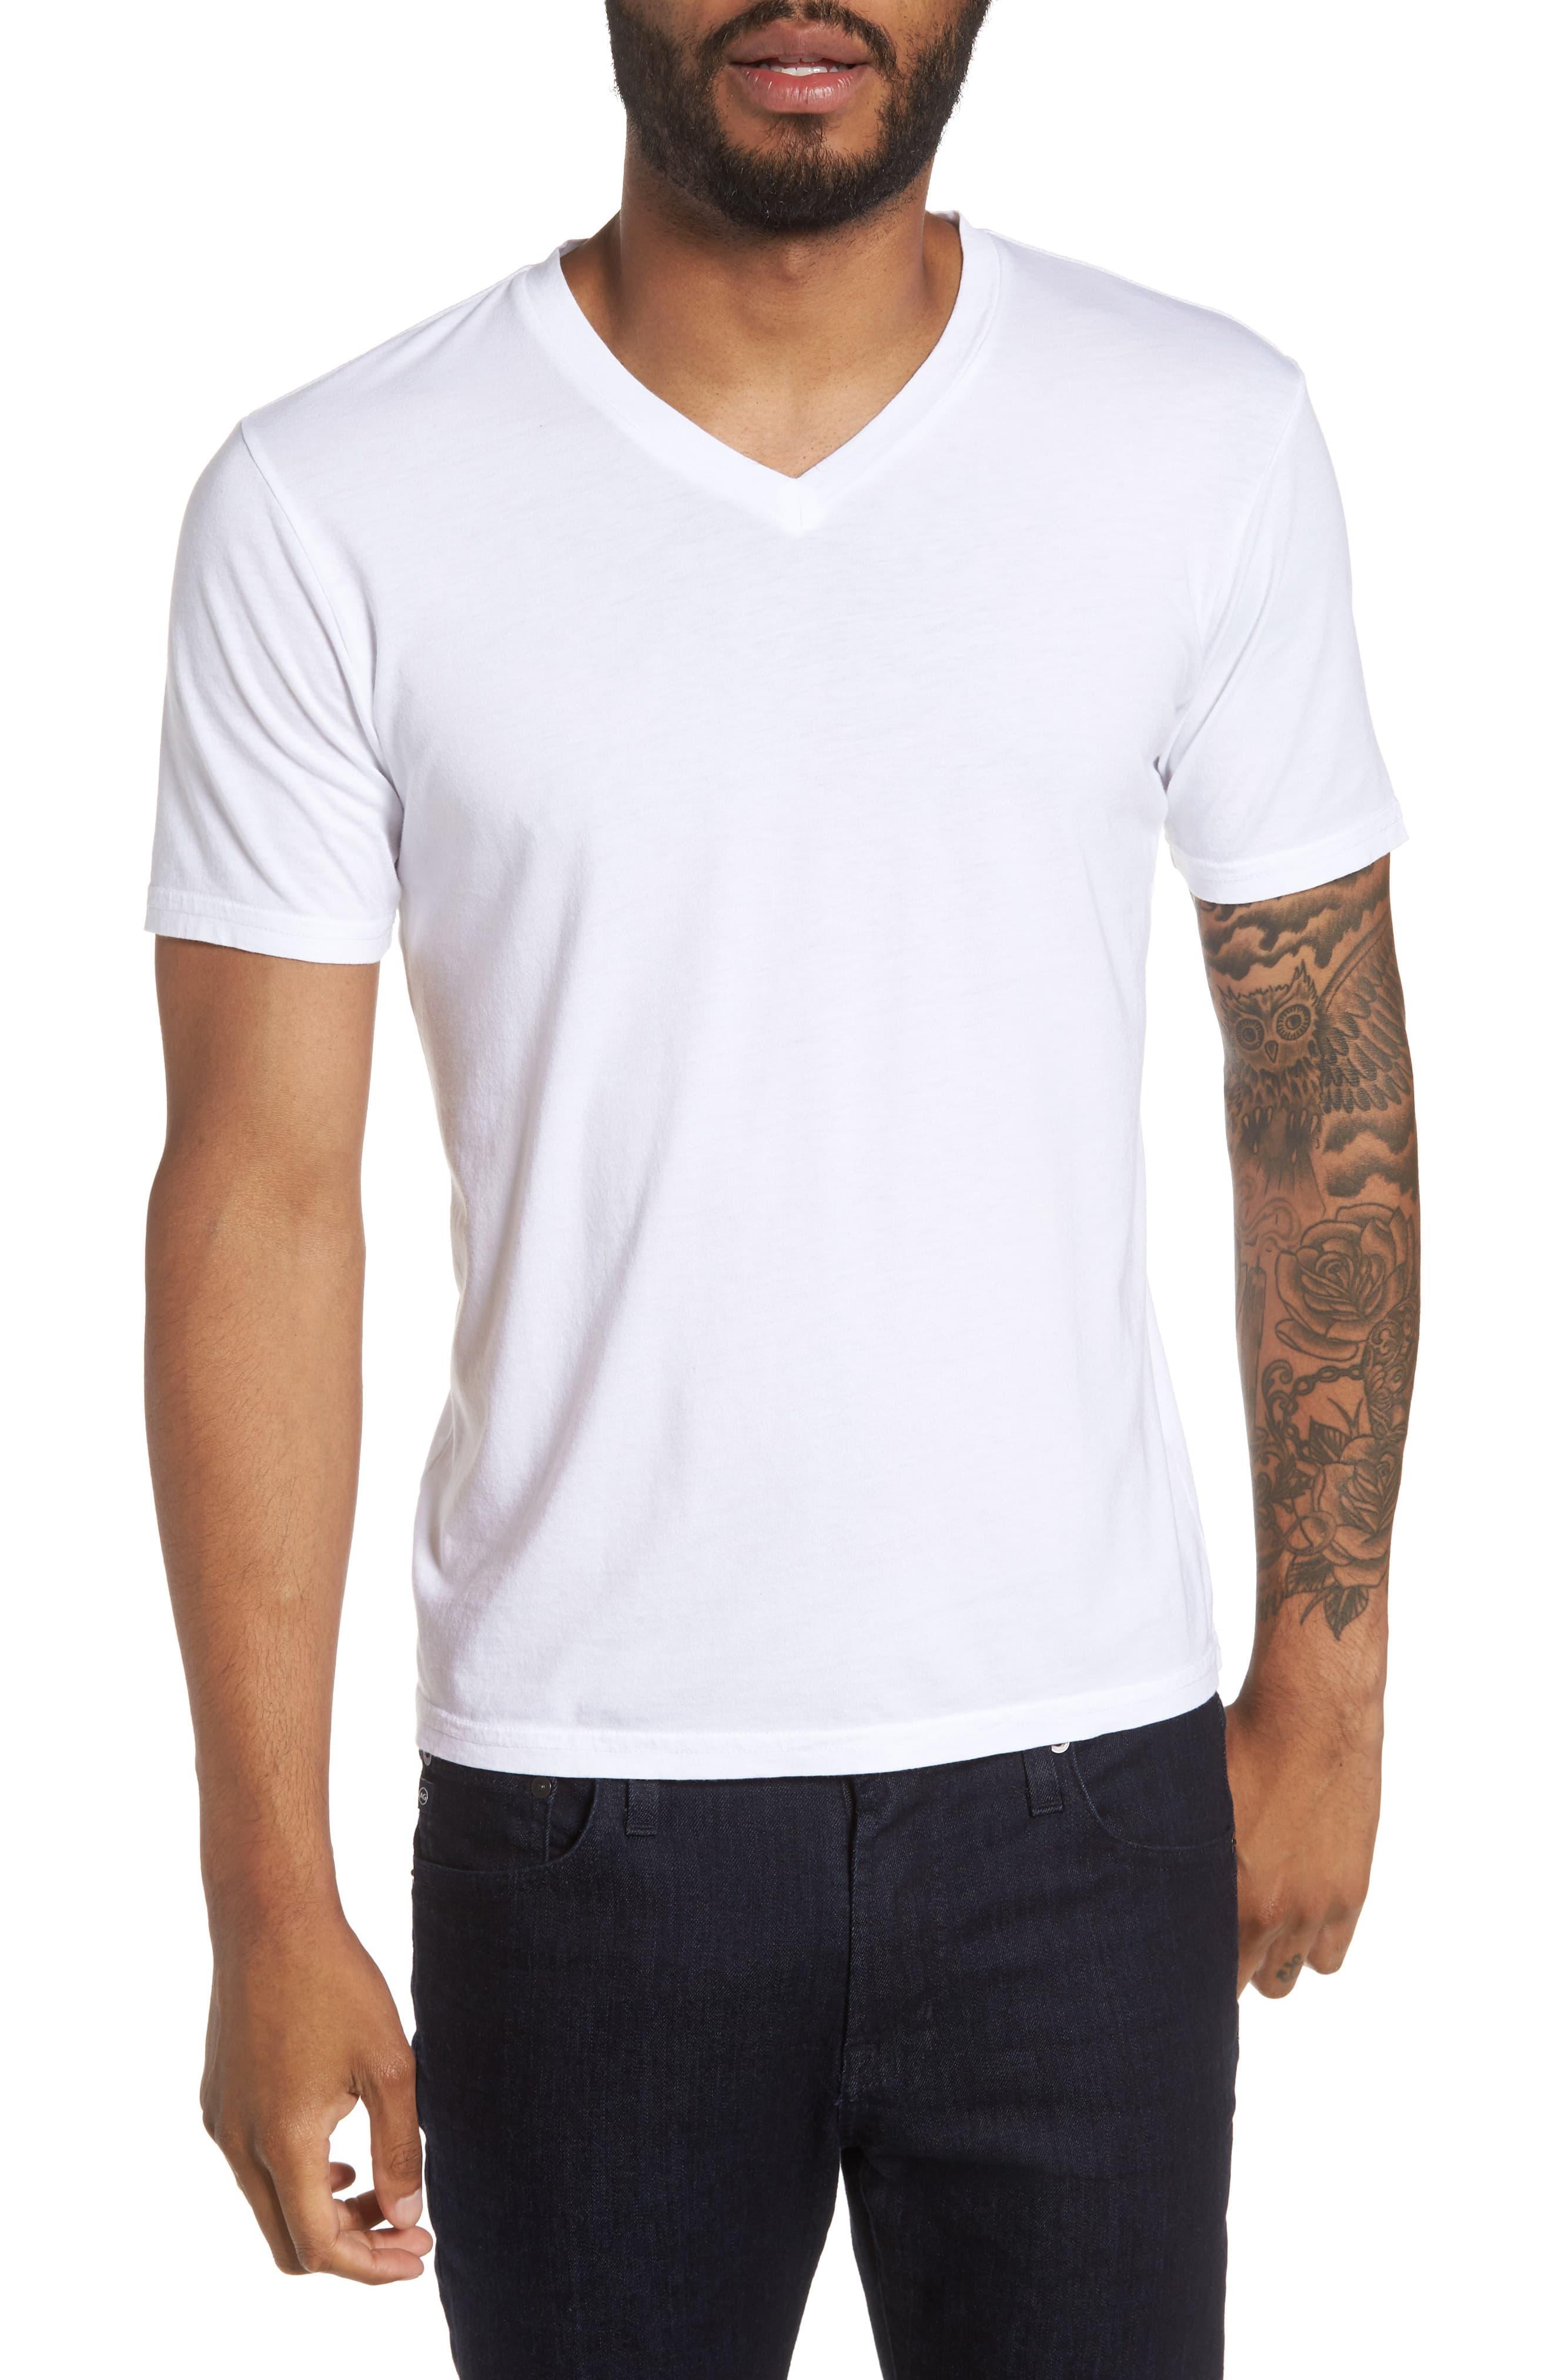 Goodlife Classic Supima Cotton Blend V-neck T-shirt in White for Men ...